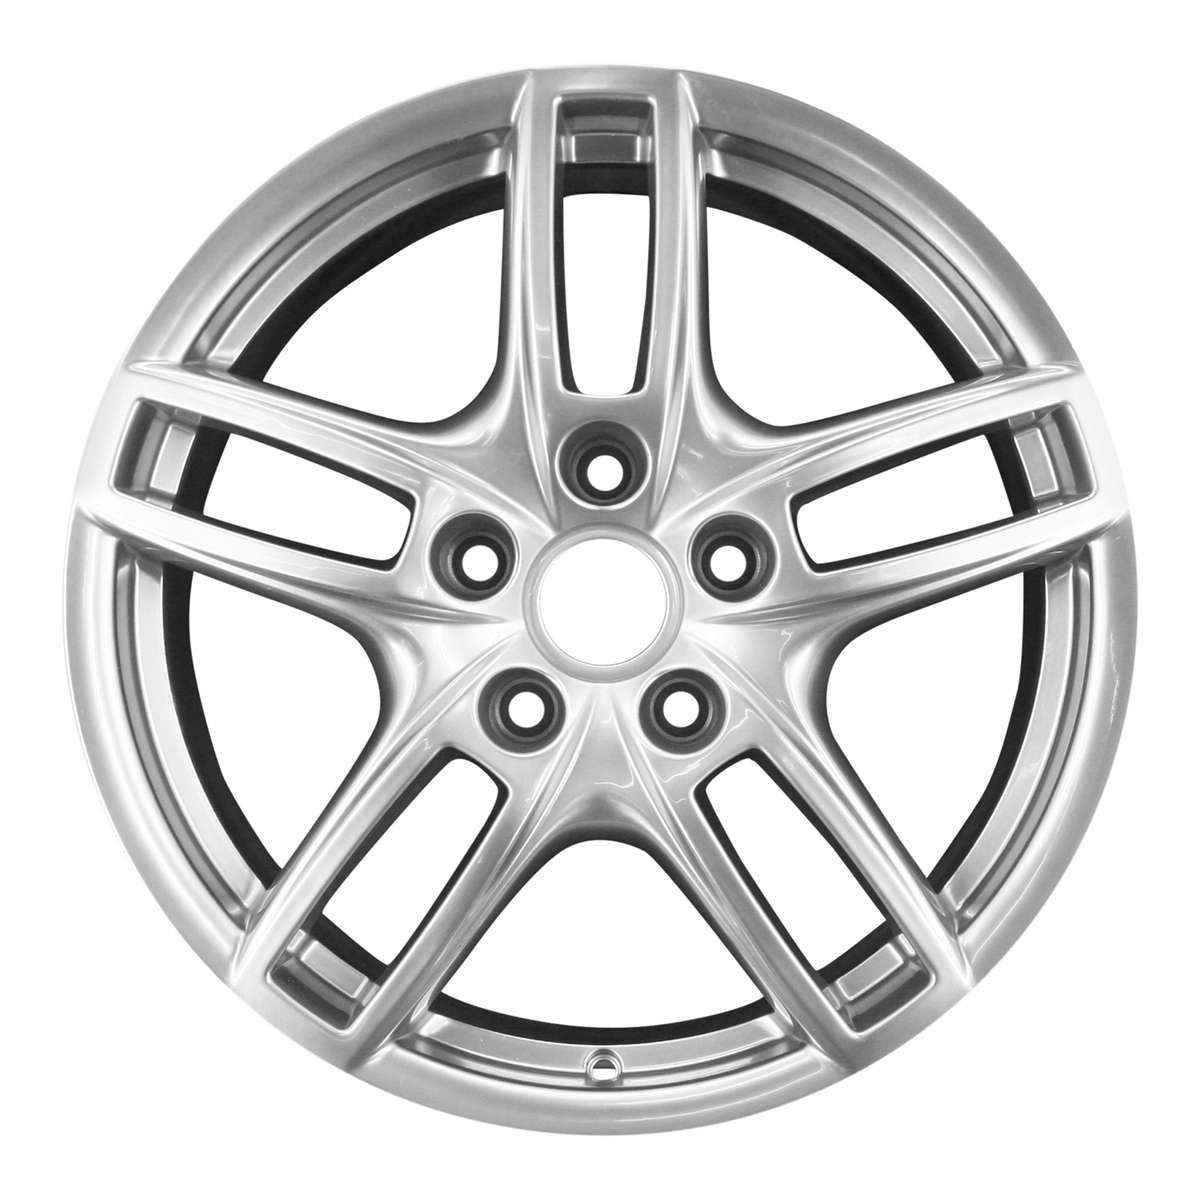 2015 Porsche Cayenne 19" OEM Wheel Rim W67404S